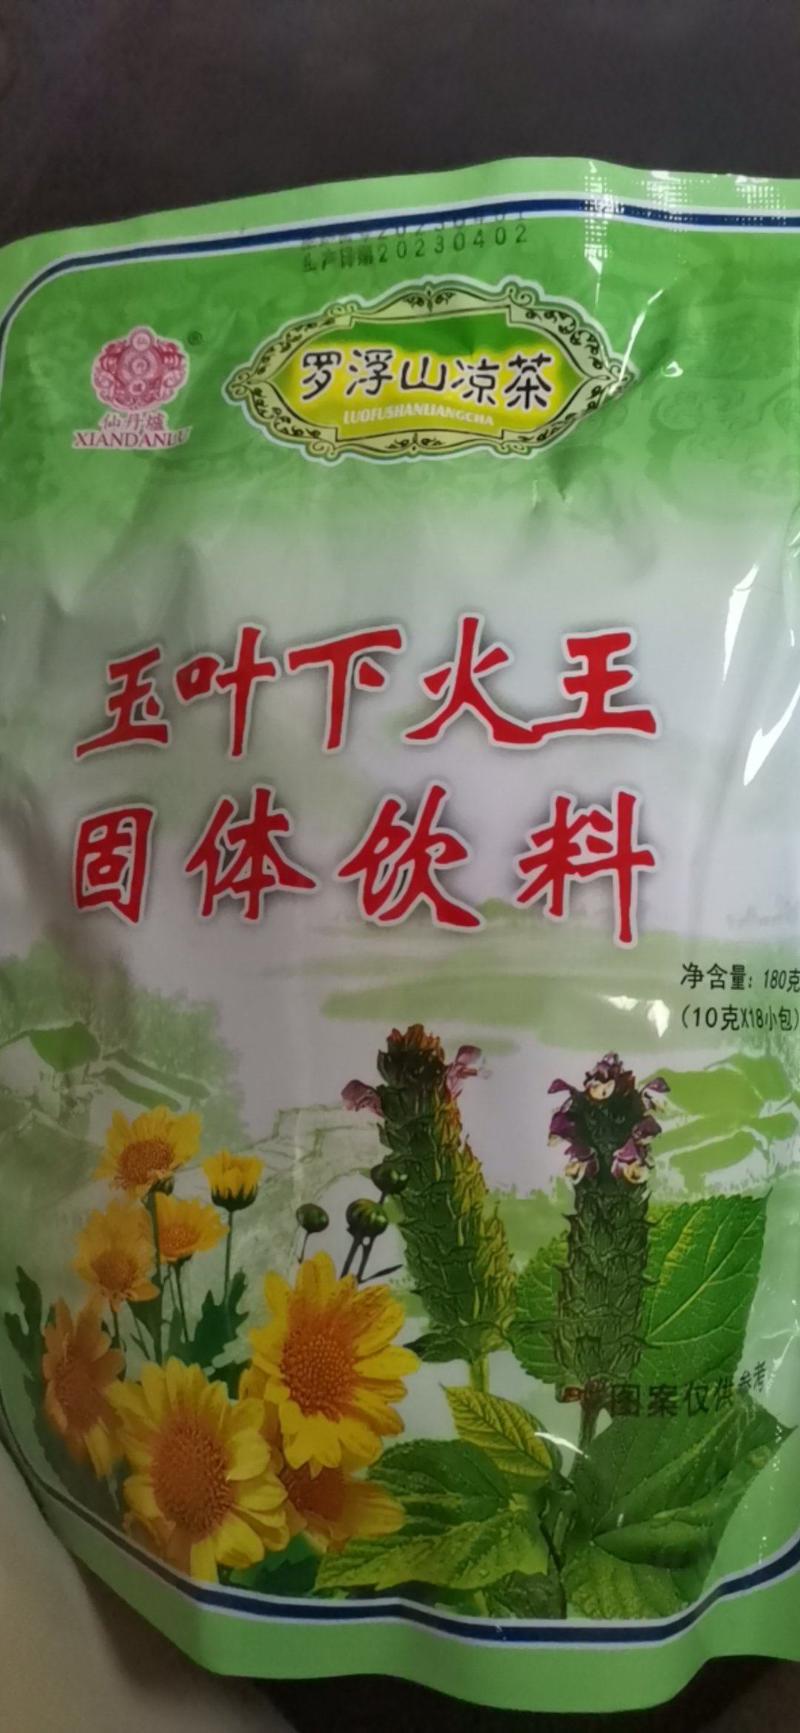 广东凉茶，夏桑菊，玉叶下火王没包净含量180克